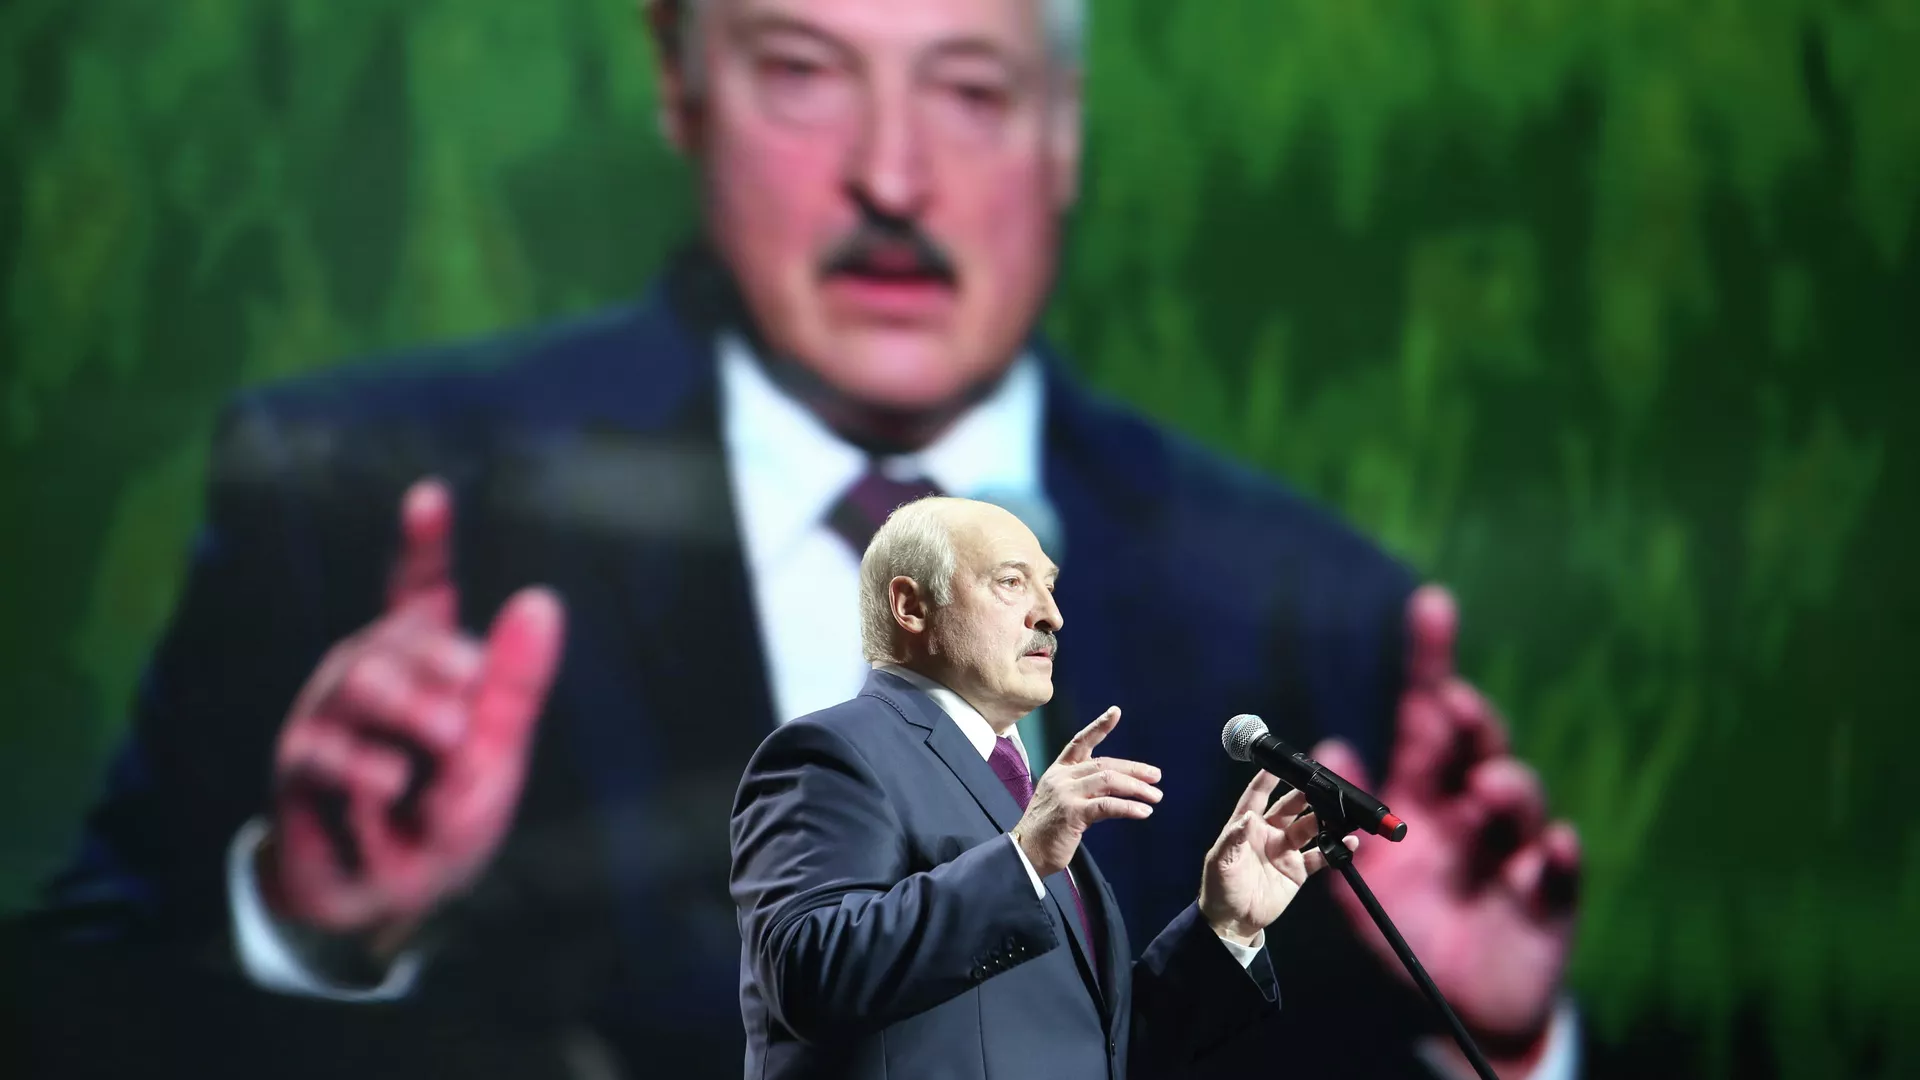 Президент Белоруссии Александр Лукашенко выступает на женском форуме в Минске. 17 сентября 2020 - РИА Новости, 1920, 25.09.2020